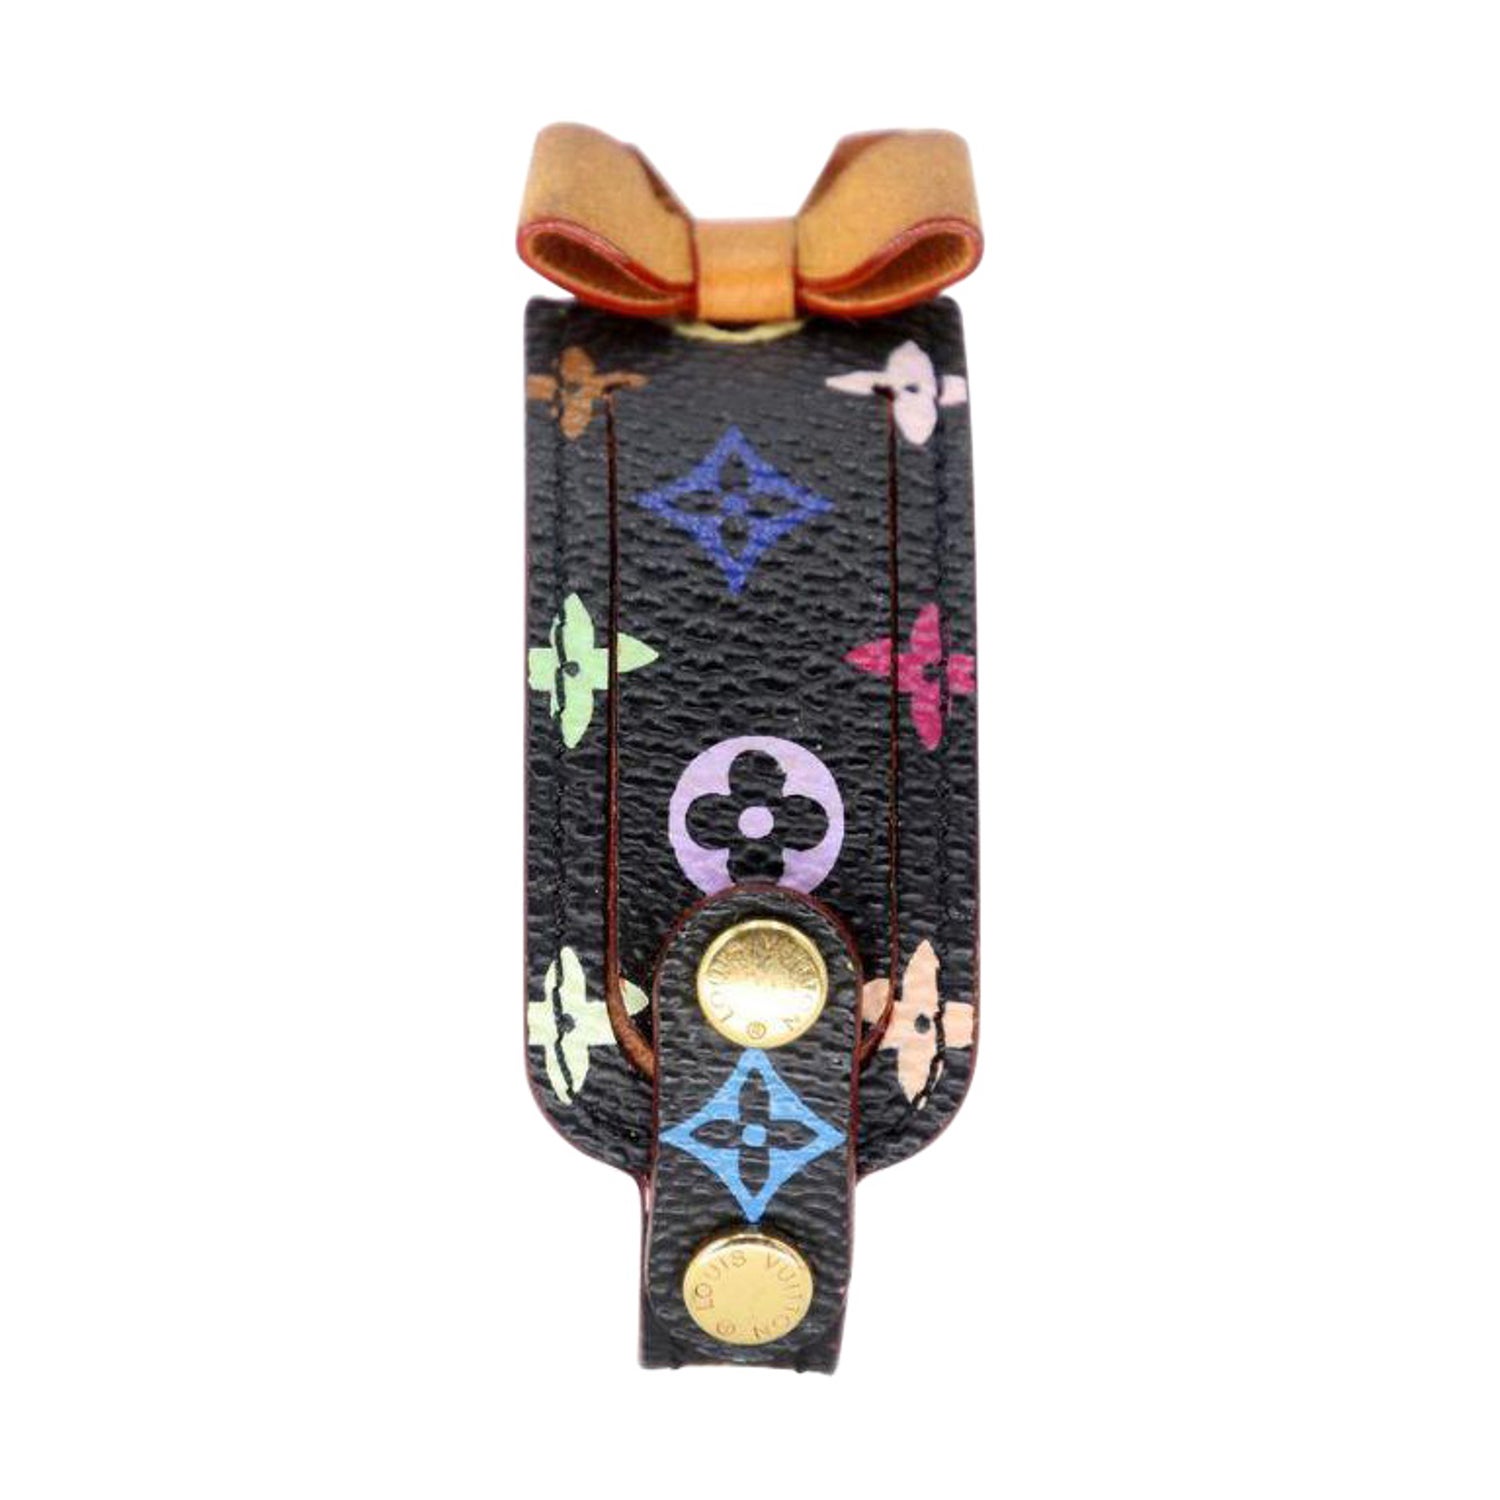 LOUIS VUITTON Friendship Bracelet Multicolored Leather. Size Na